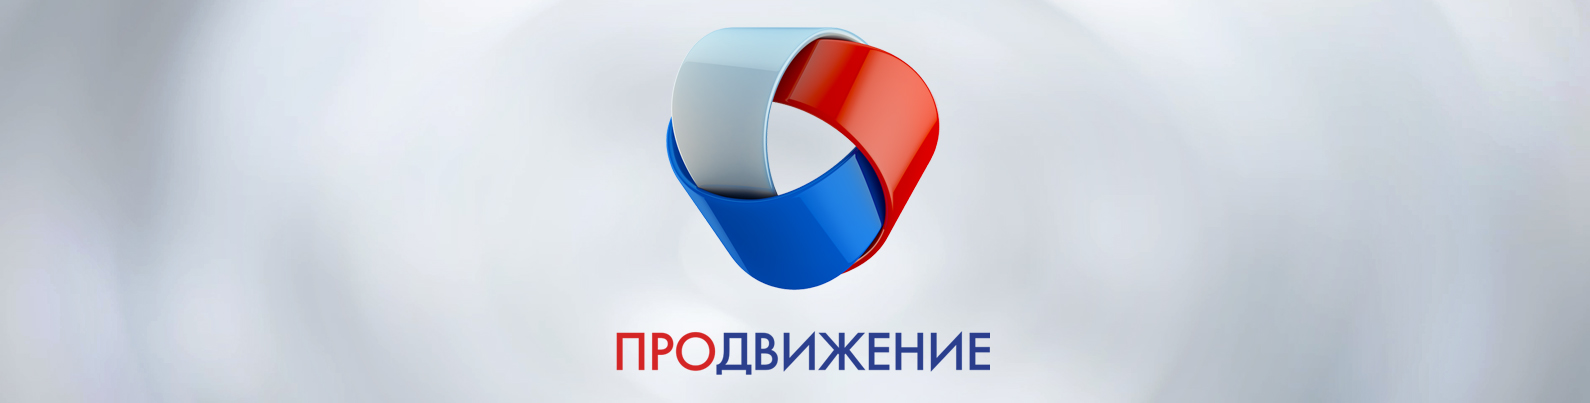 Телеканал «Продвижение» расширяет сеть партнерского вещания в городах России - телеканал "Продвижение"